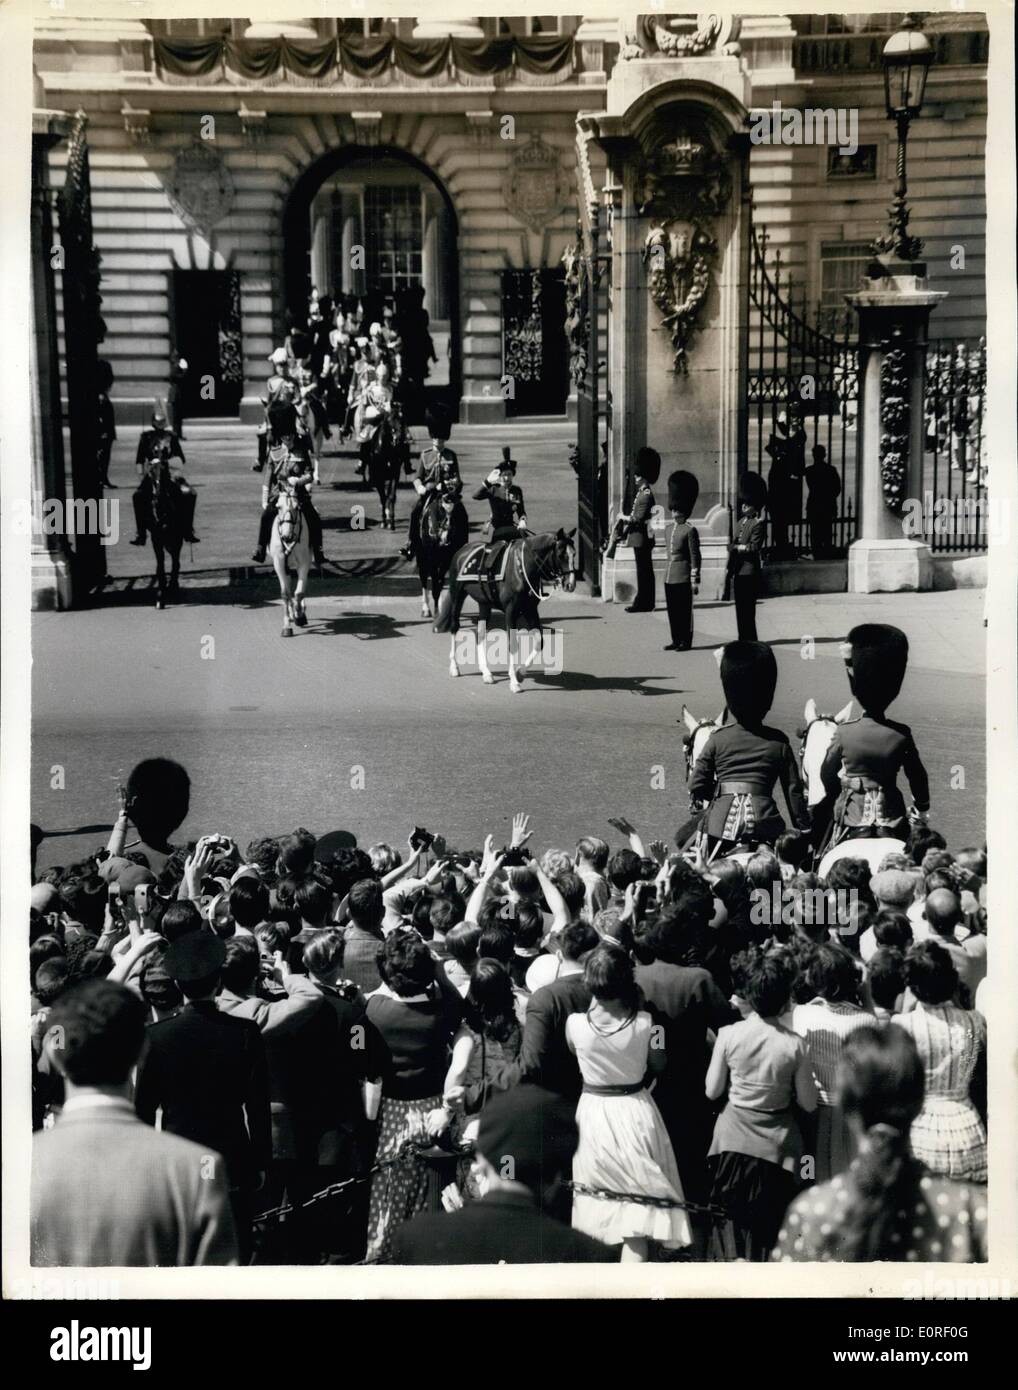 Juin 06, 1959 - La parade la cérémonie. couleur : Sa Majesté la Reine a pris le salut sur Horse Guard Parade lors de la parade la cérémonie des couleurs, organisée à l'occasion de son anniversaire officiel. Photo montre la scène comme Sa Majesté la Reine vu saluer, à gauche le palais de Buckingham en route pour la cérémonie de ce matin. Banque D'Images